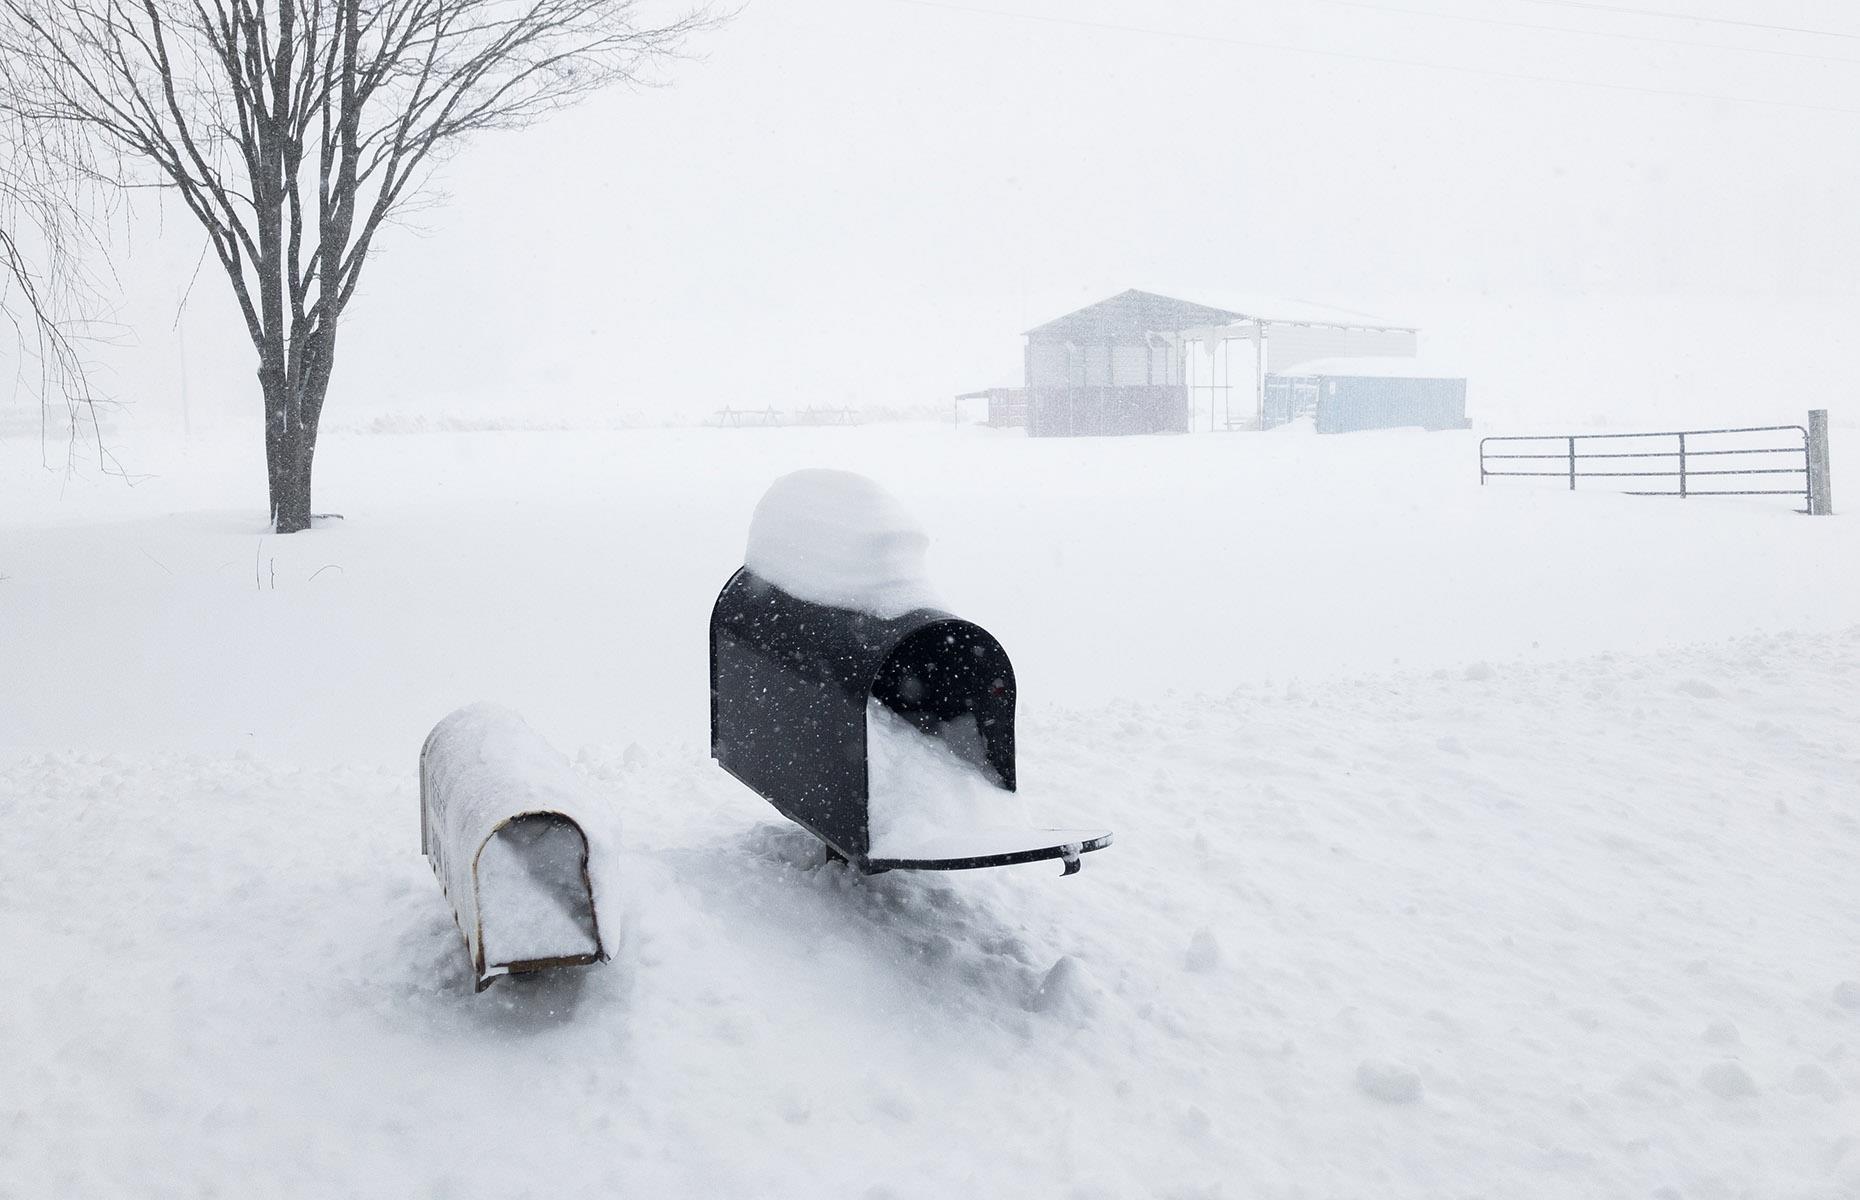 Farmhouse caught in a blizzard, Pennsylvania, USA